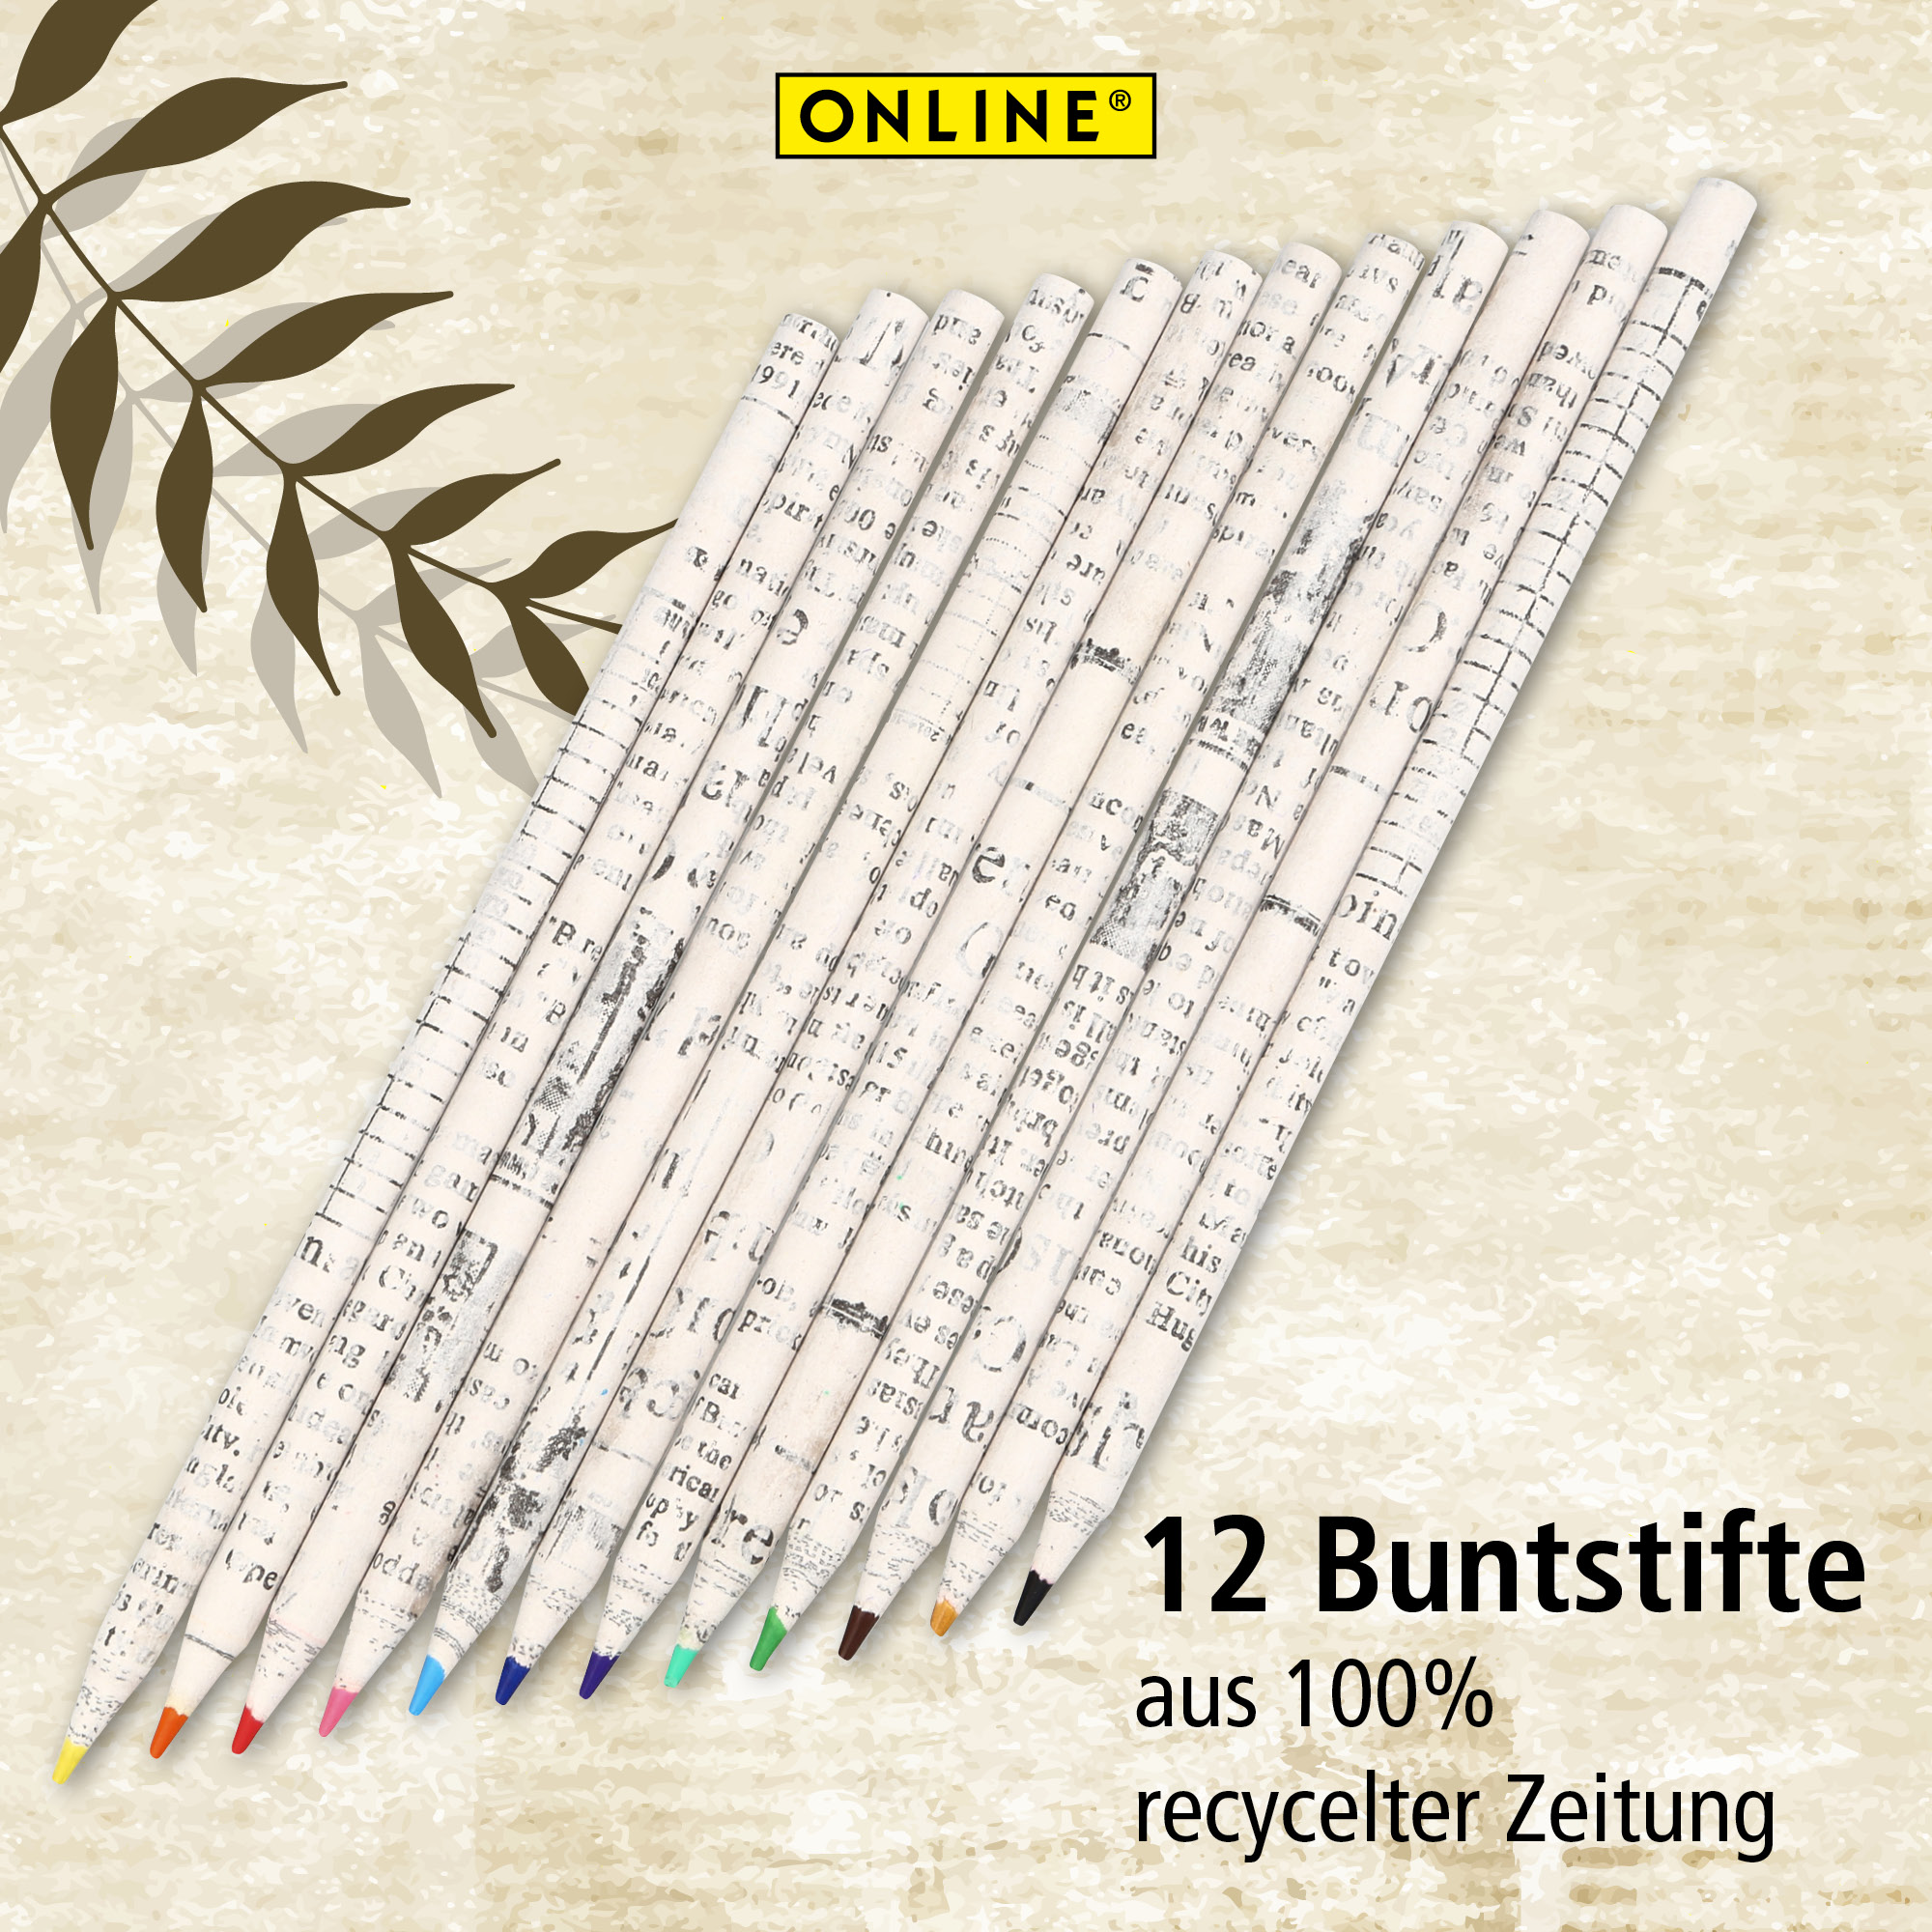 12 Buntstifte aus 100% recycelter Zeitung